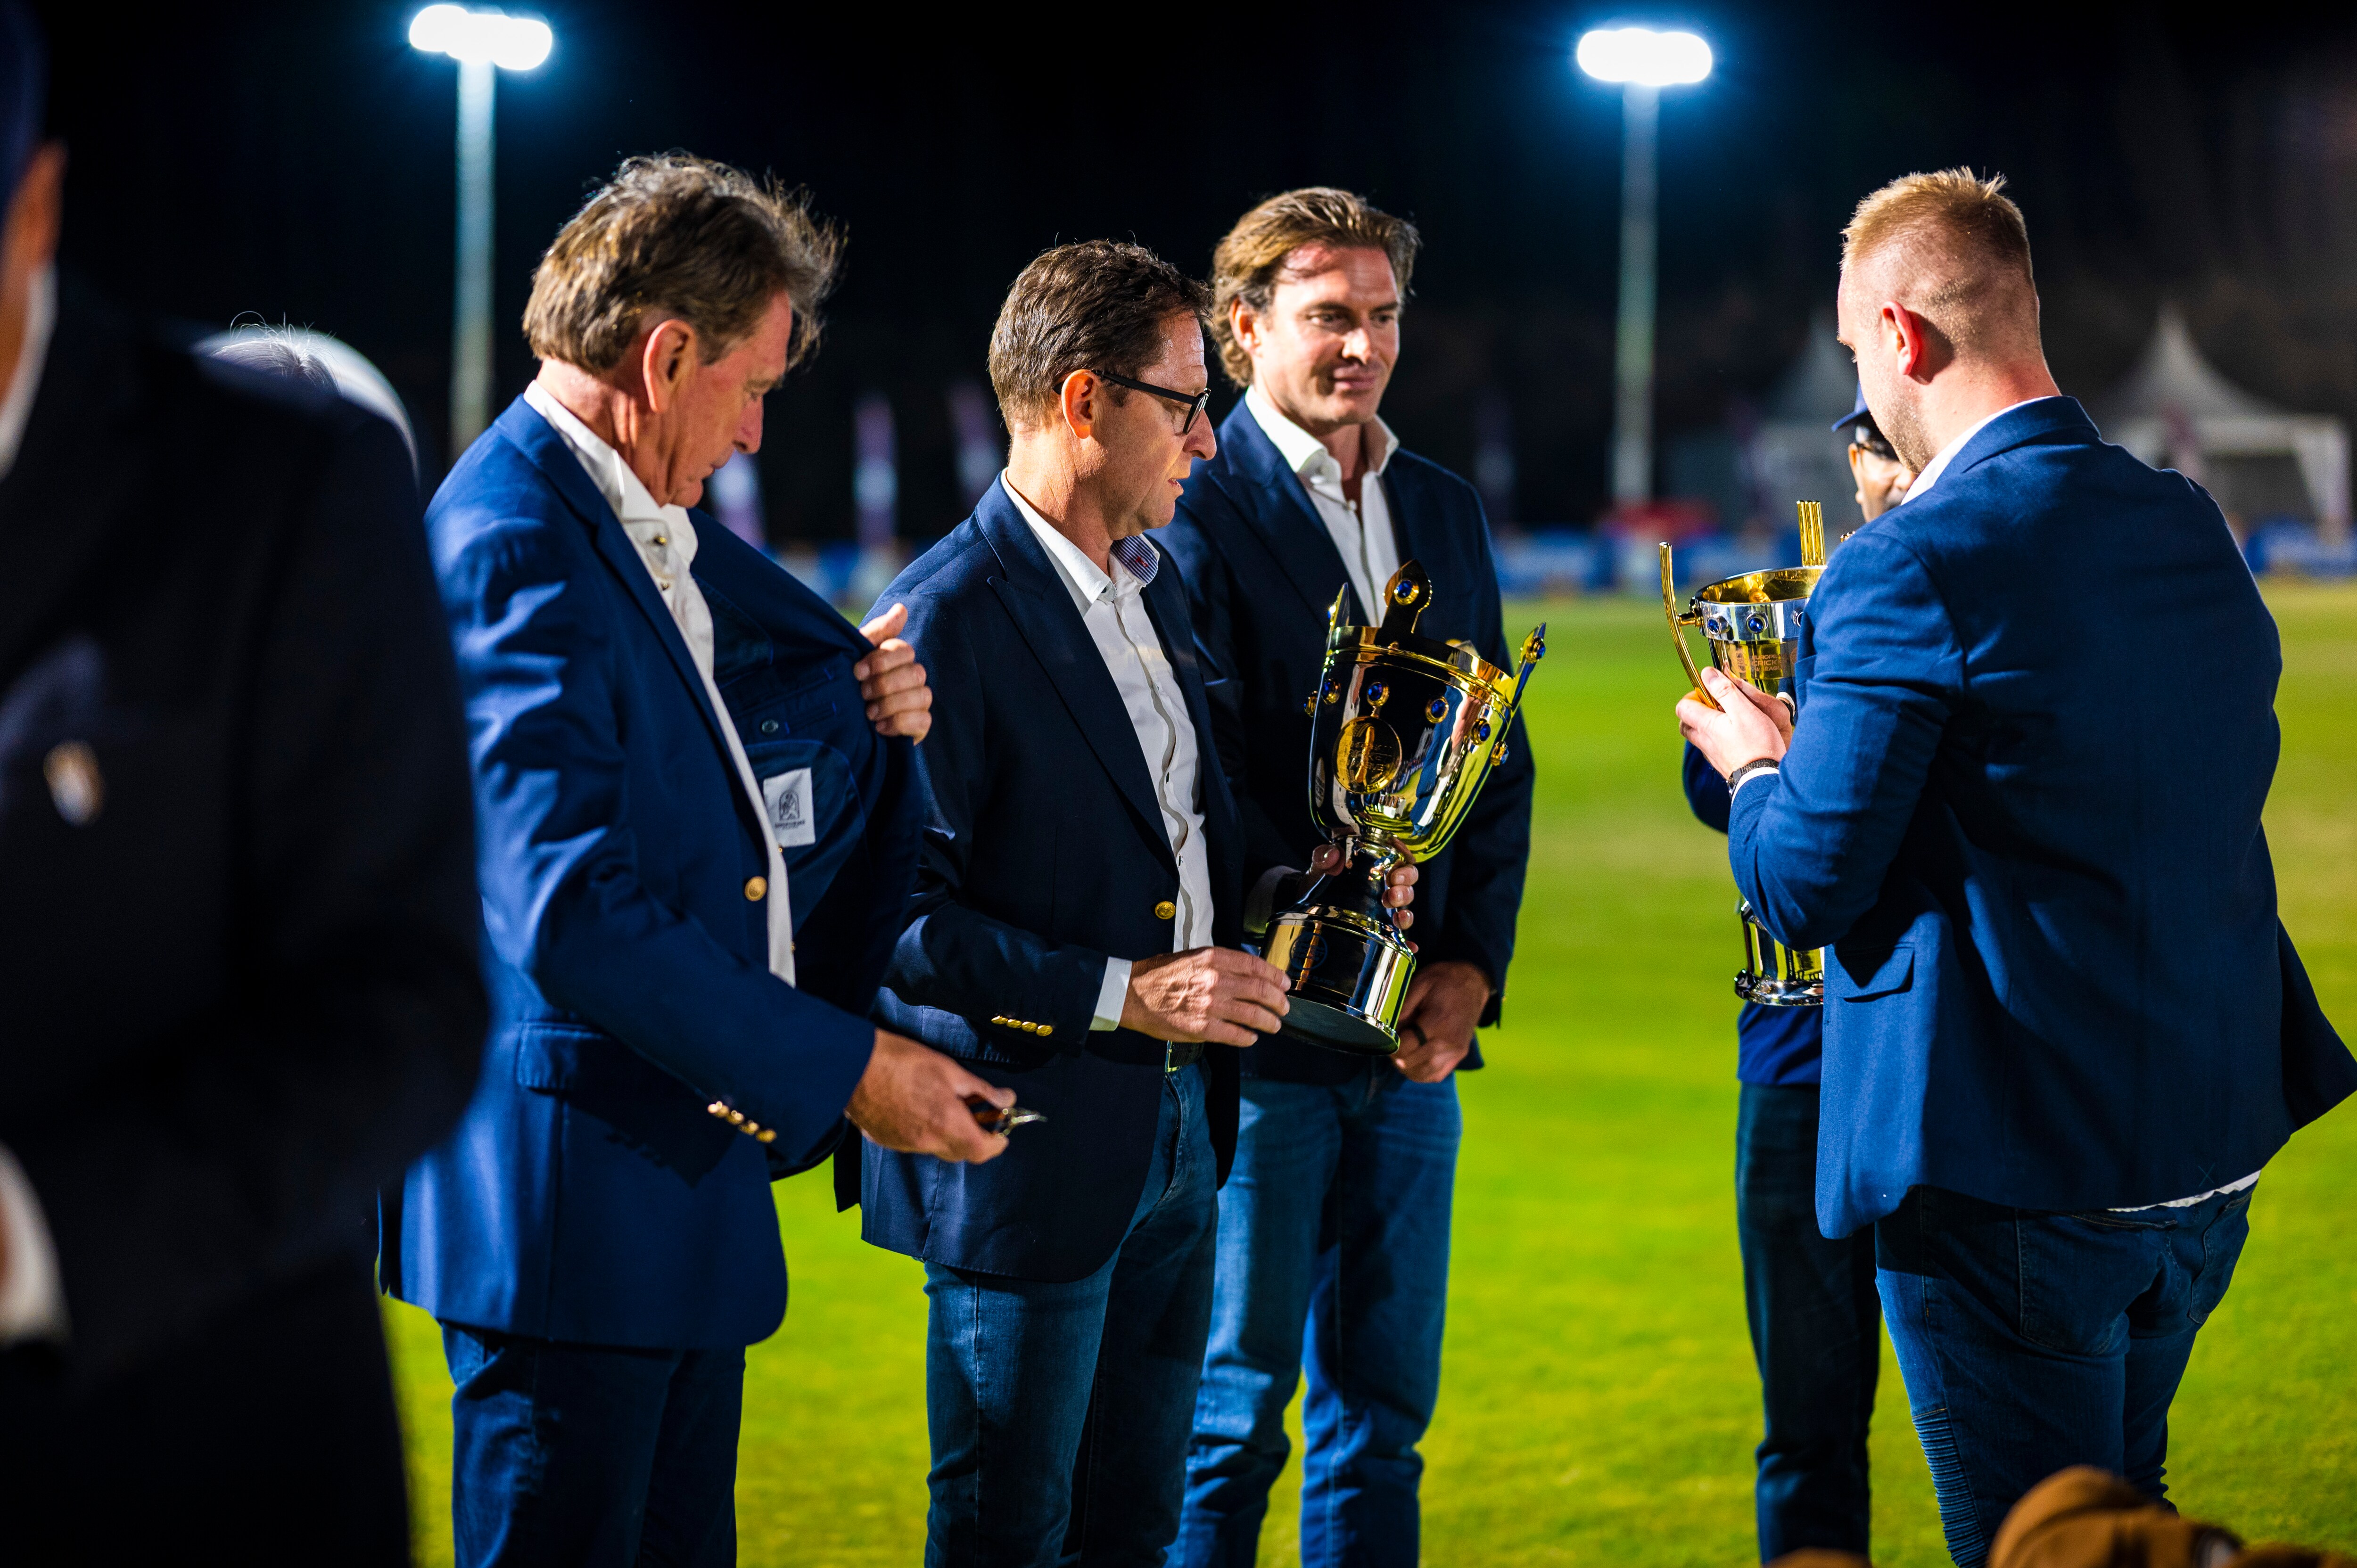 Dreux lift European Cricket League champions trophy, in pictures